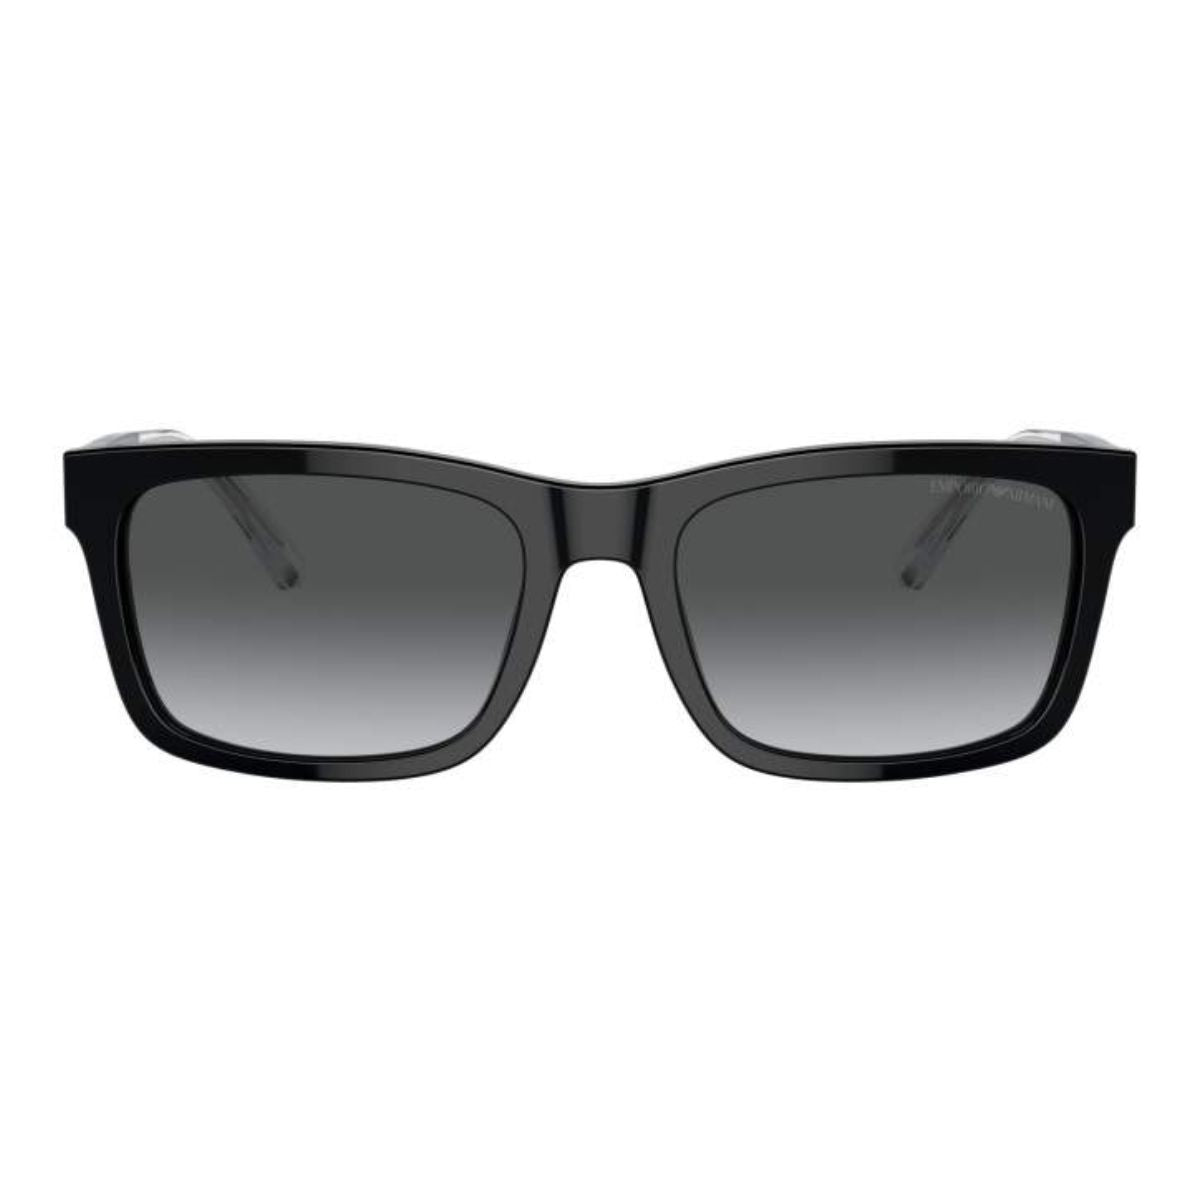 Emporio Armani EA4224 5017/T3 Sunglasses